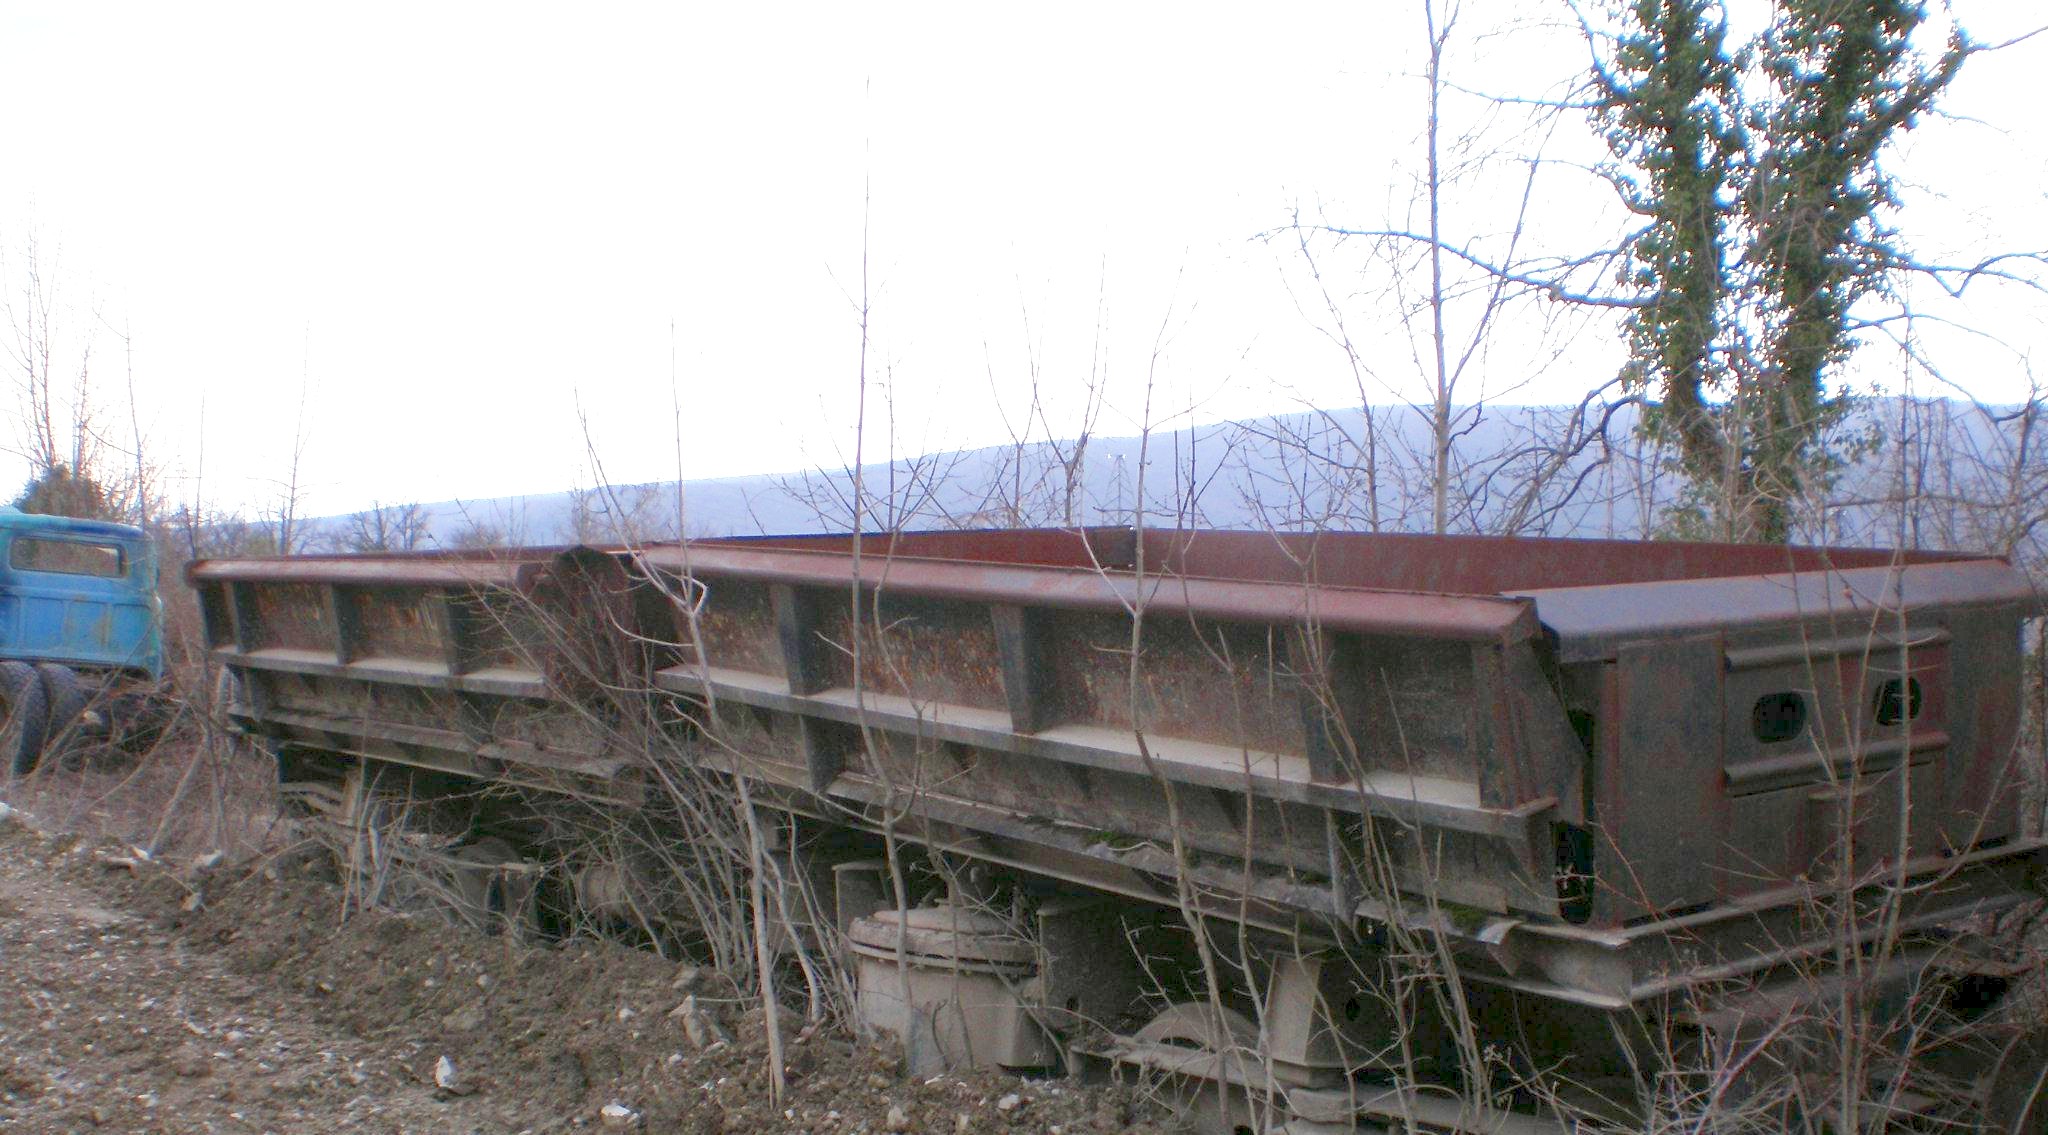 Узкоколейная железная дорога производственного кооператива «Вертикаль» (город Геленджик)  — фотографии, сделанные в 2008 году (часть 2)